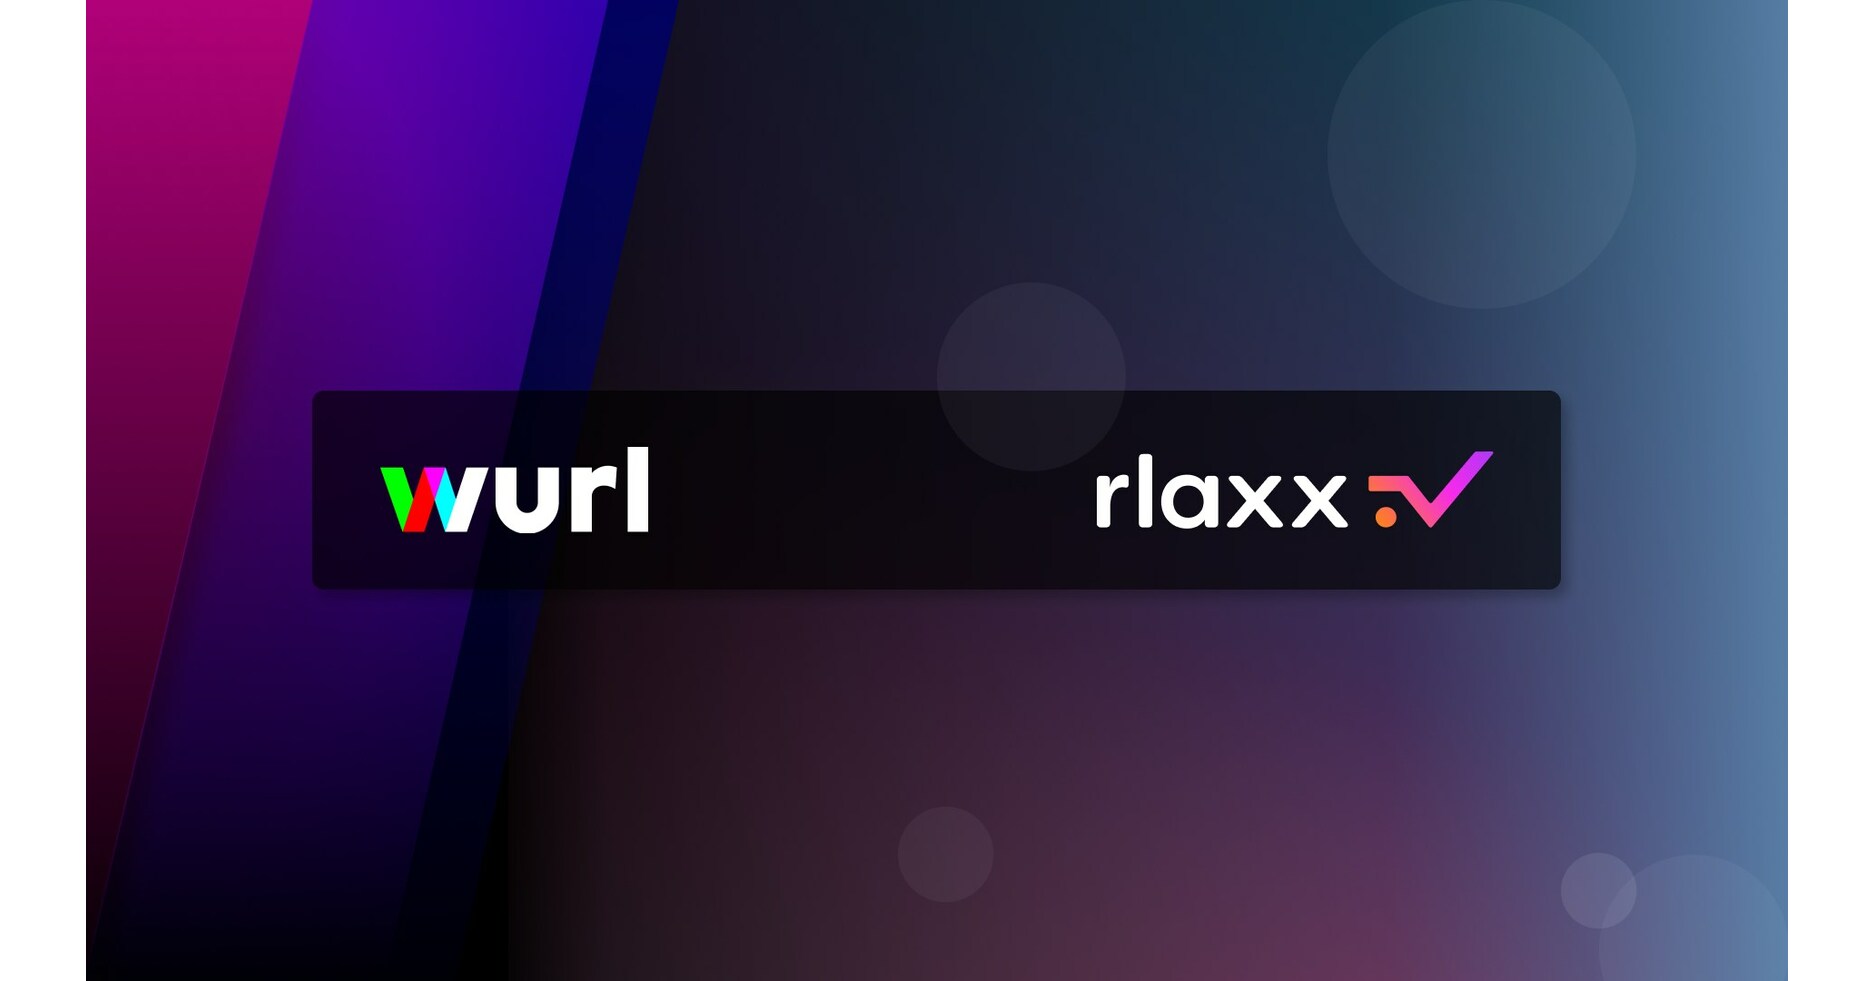 rlaxx TV arbeitet mit Wurl zusammen, um aufregende neue FAST-Kanäle zu präsentieren